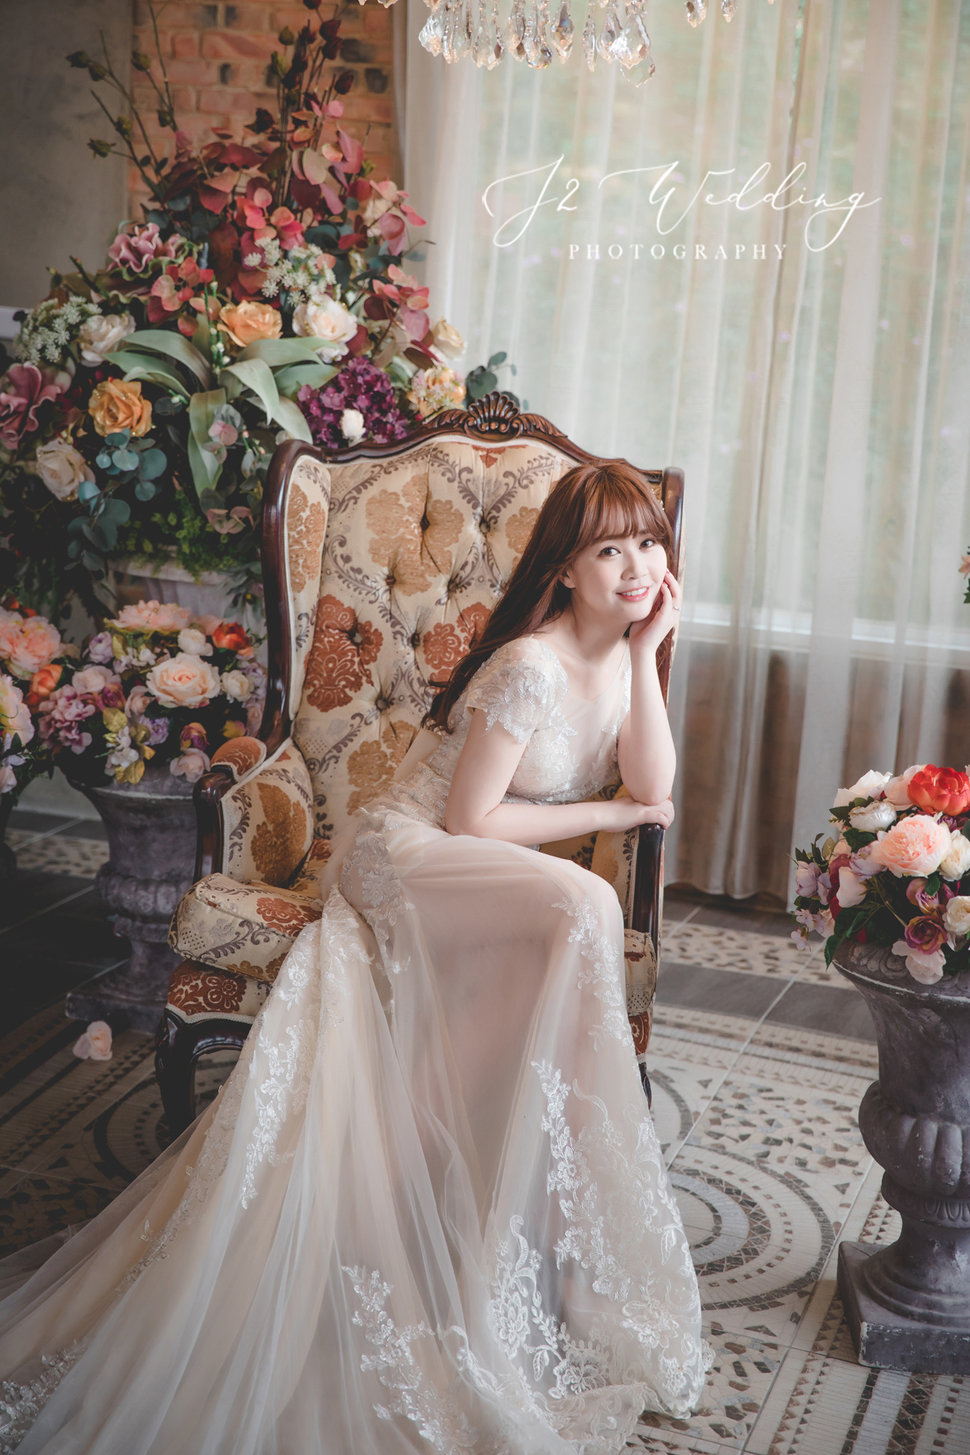 069A3646 - J2 wedding 手工訂製婚紗 新北《結婚吧》